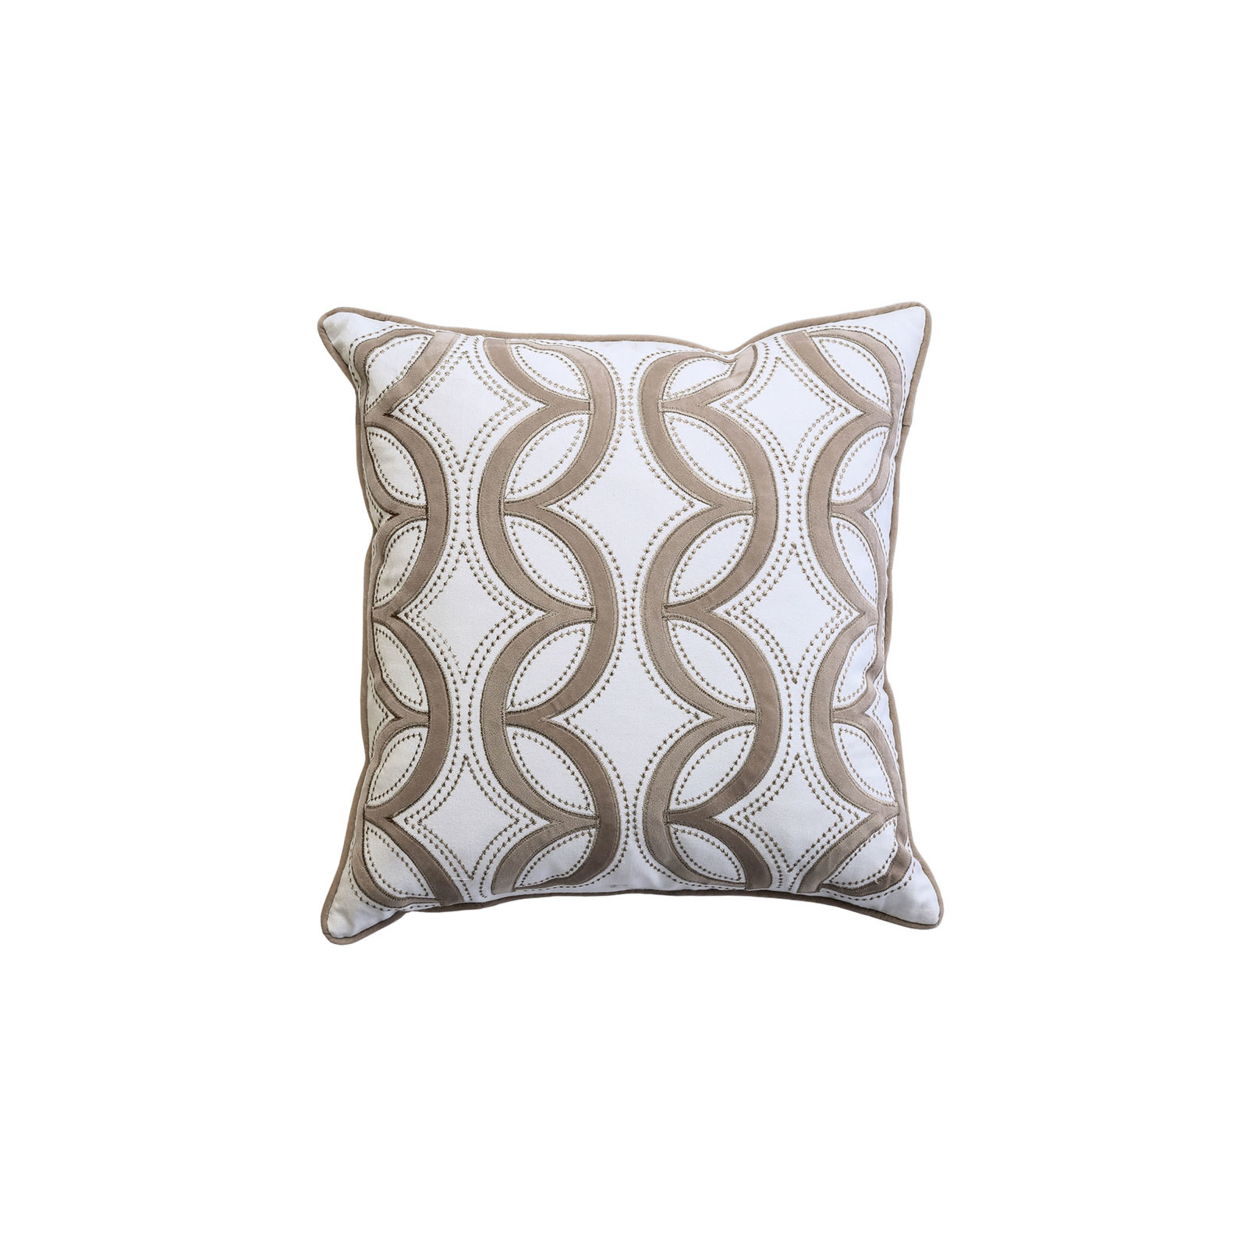 Contemporary Style Waterflow Feather Cotton Throw Pillow, Set Of 2- Saltoro Sherpi